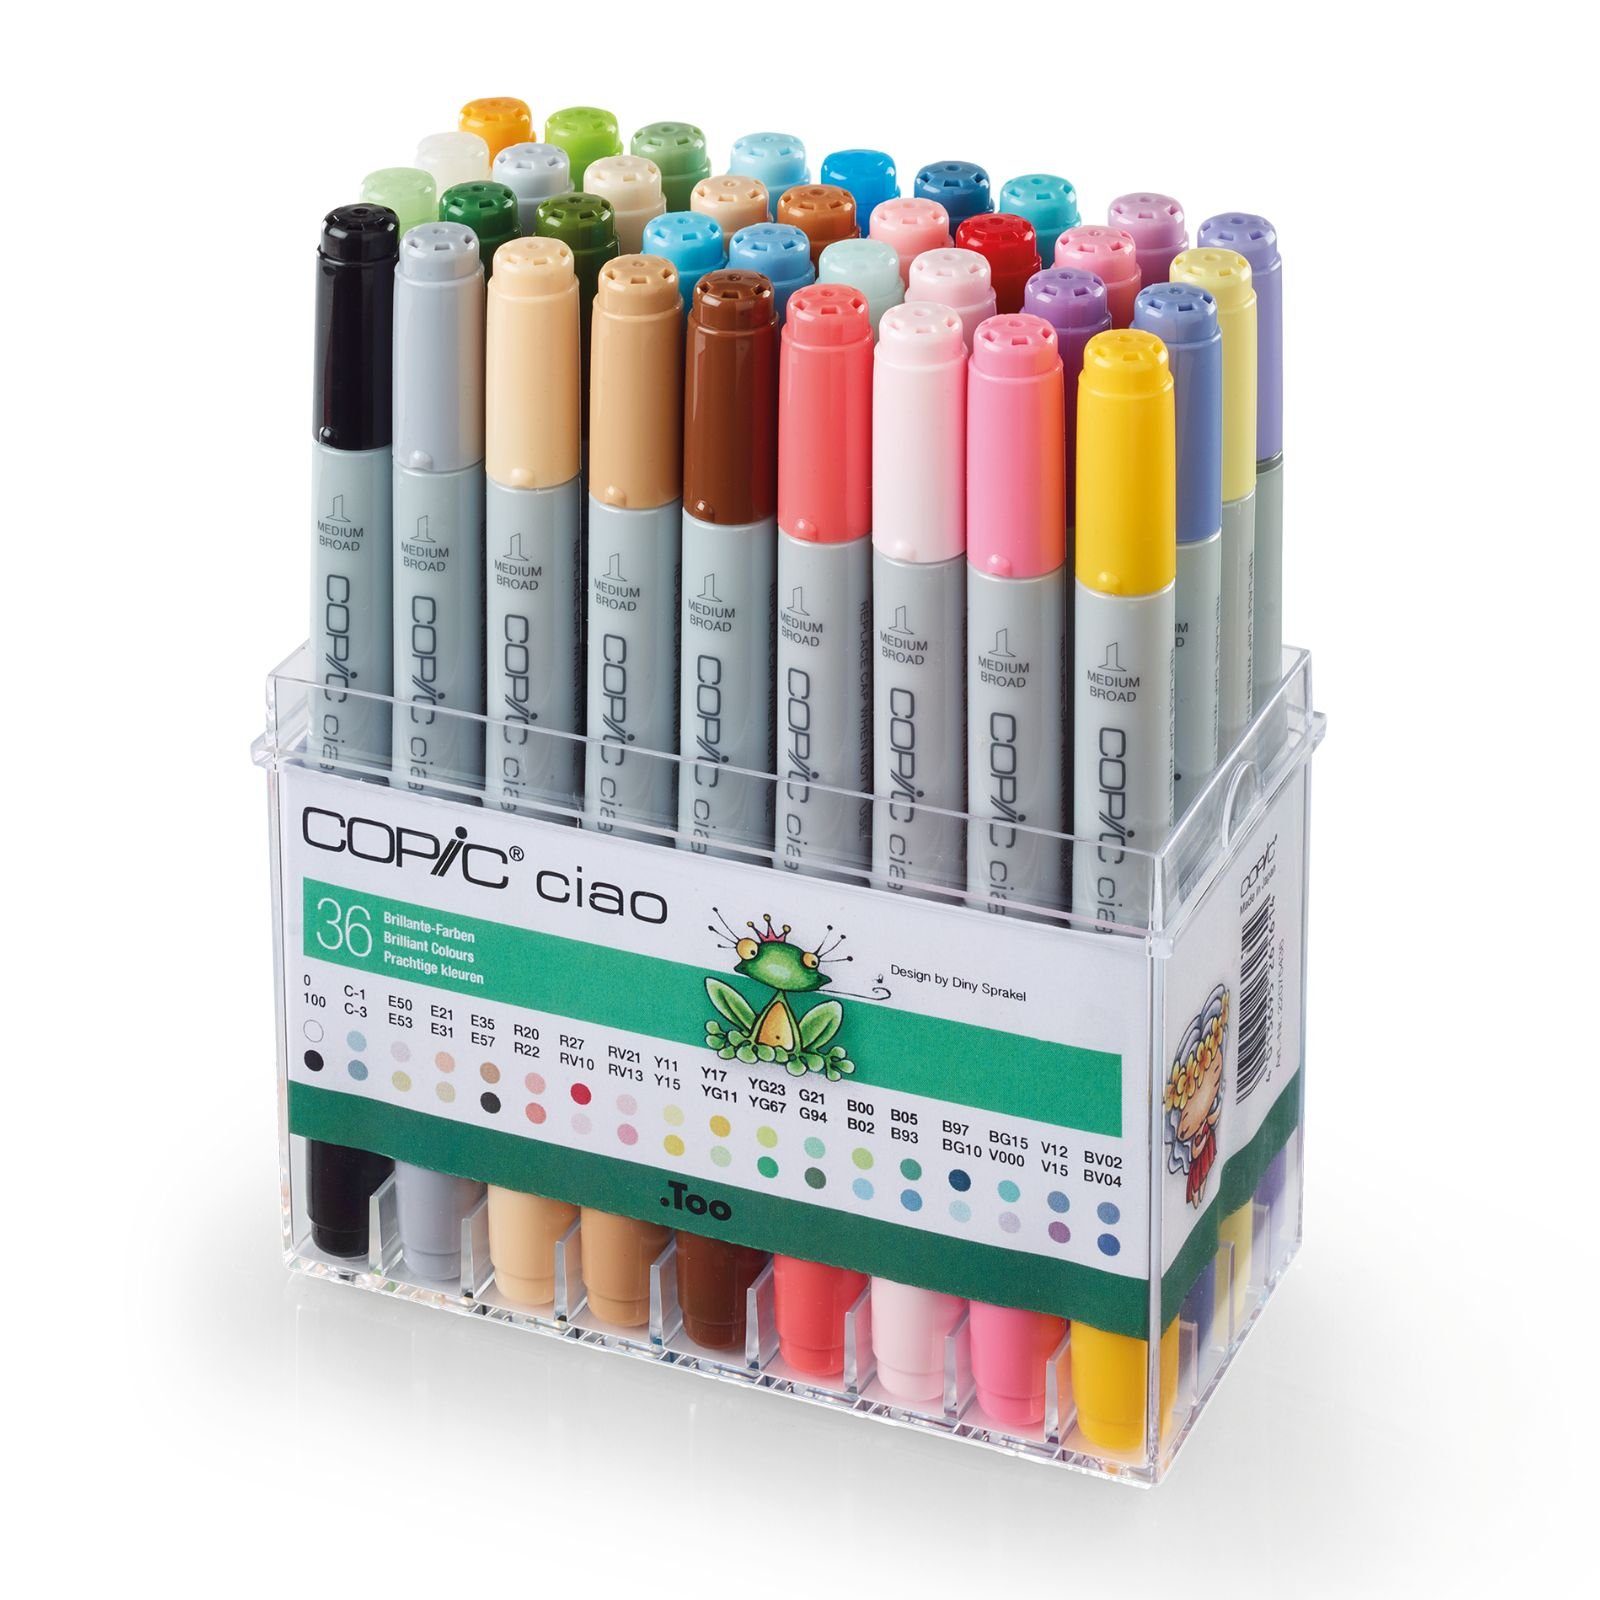 Ciao COPIC COPIC Copic 36er - Marker Brillante Set Farben